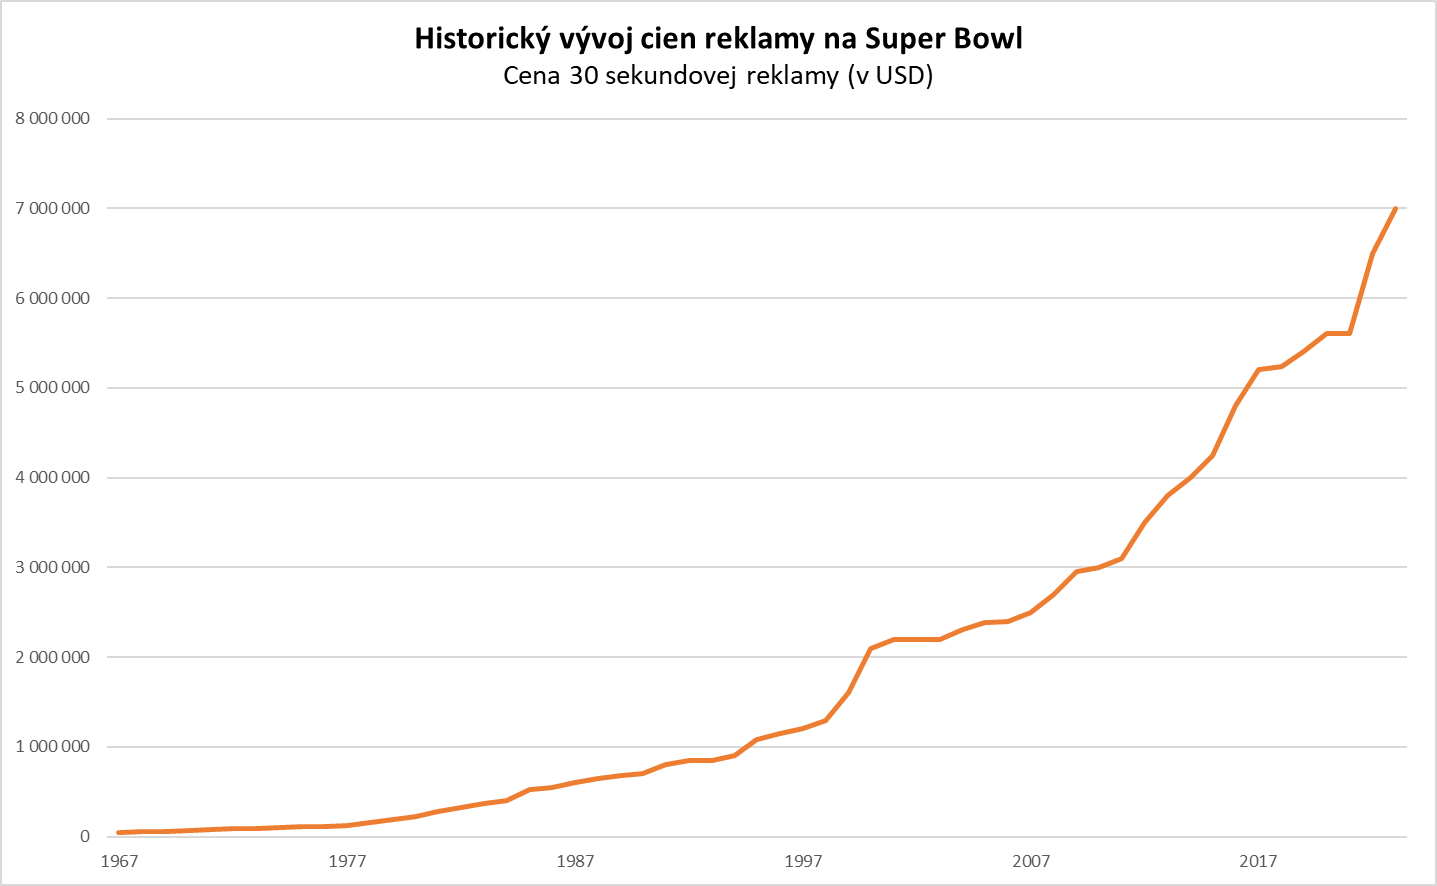 Graf ukazujúci historický vývoj cien reklamy na Super Bowl